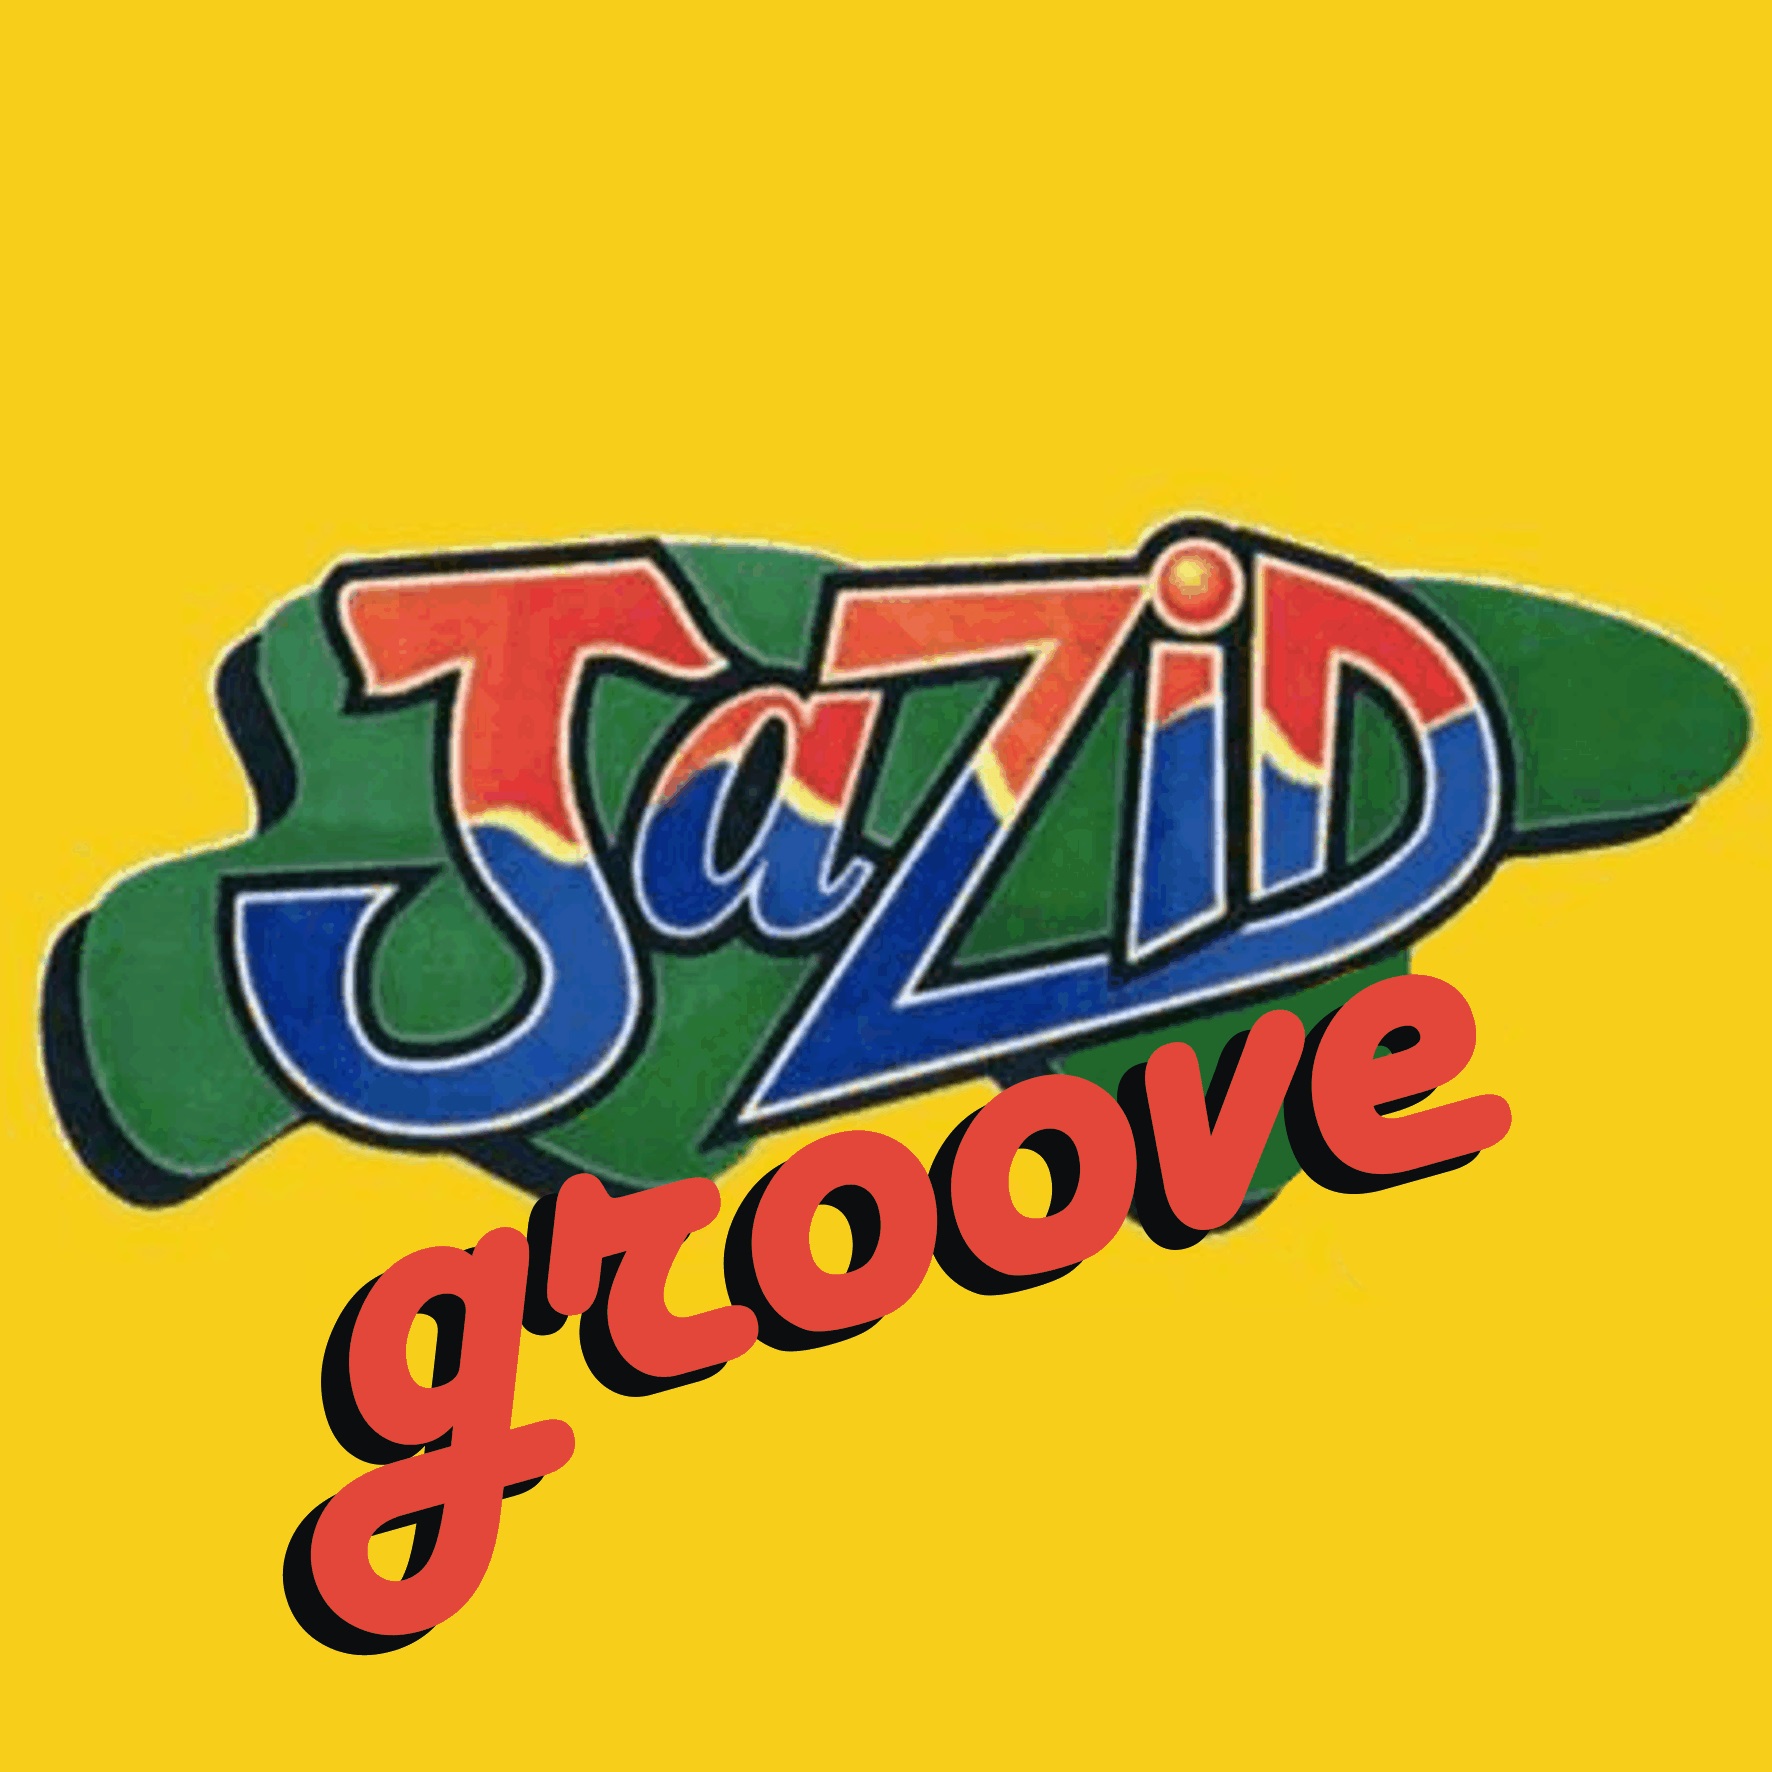 Jazid Groove 34